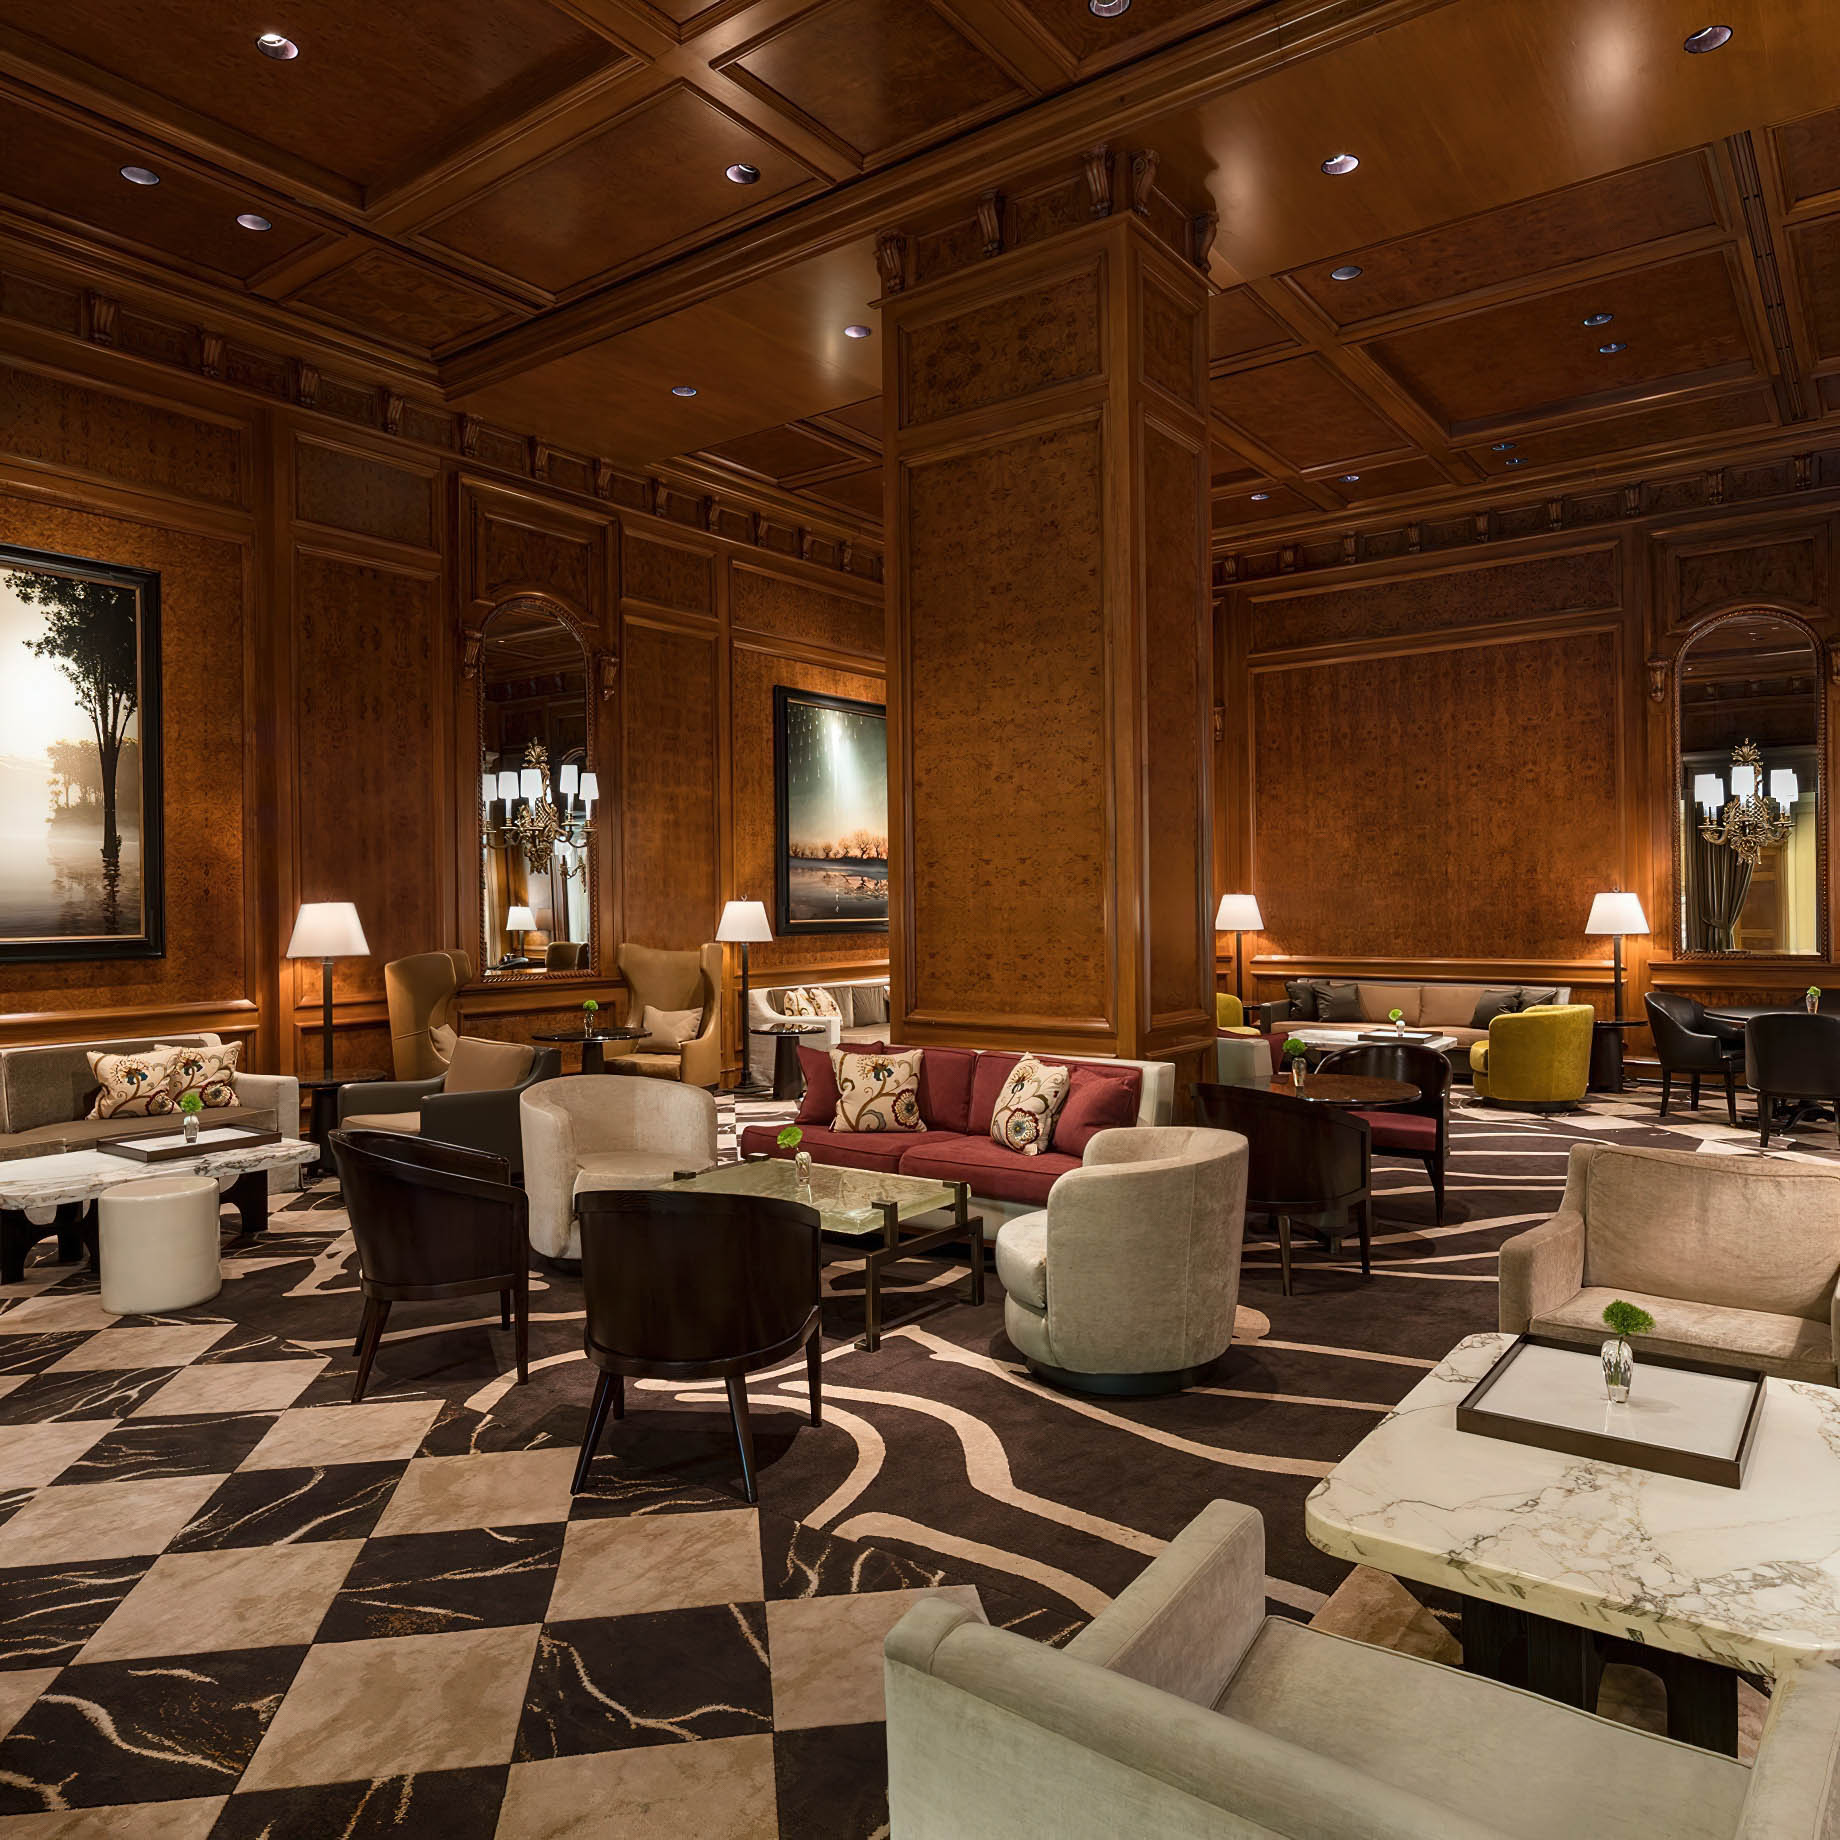 The Ritz-Carlton New York, Central Park Hotel - New York, NY, USA - Hotel Interior